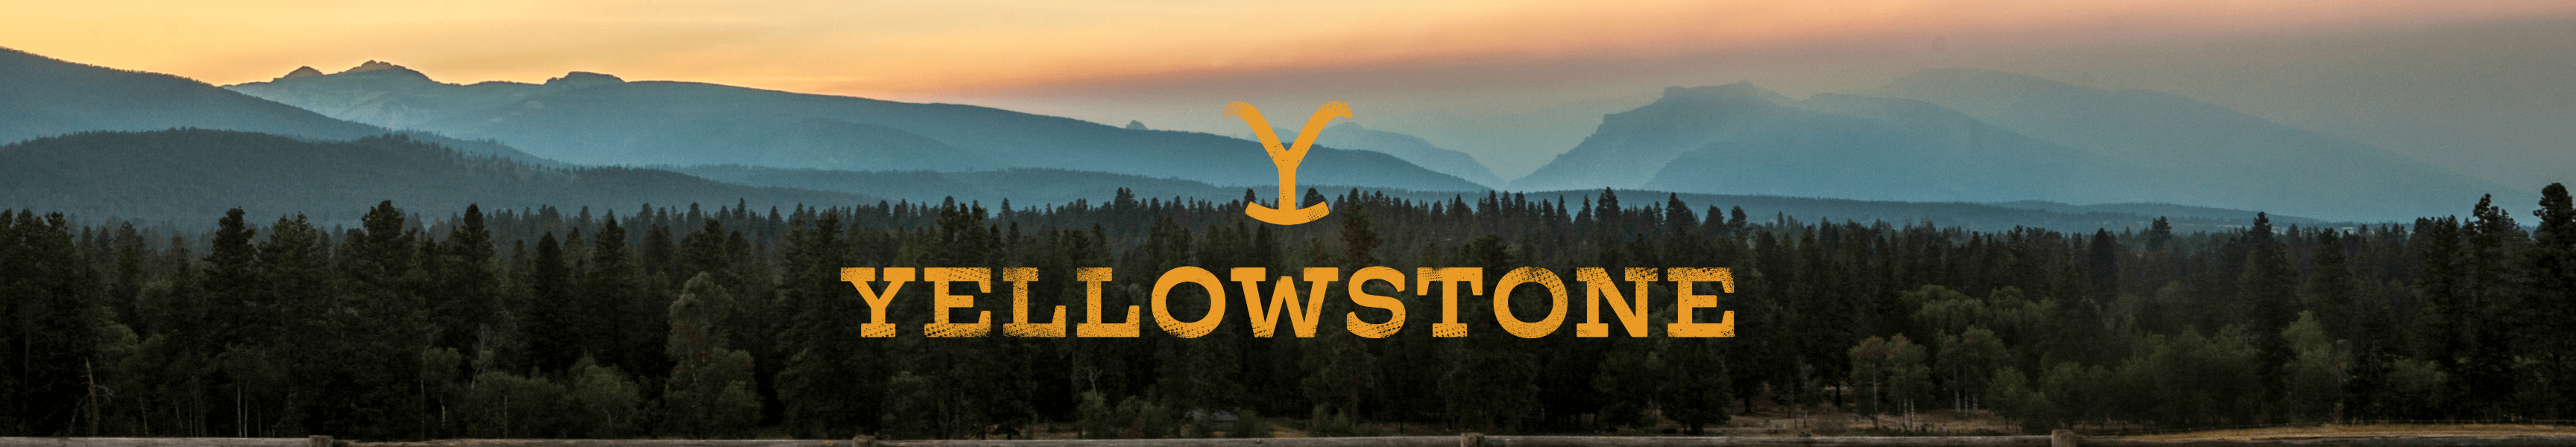 Notre cadeau pour vous : Réduction Yellowstone à prix réduit